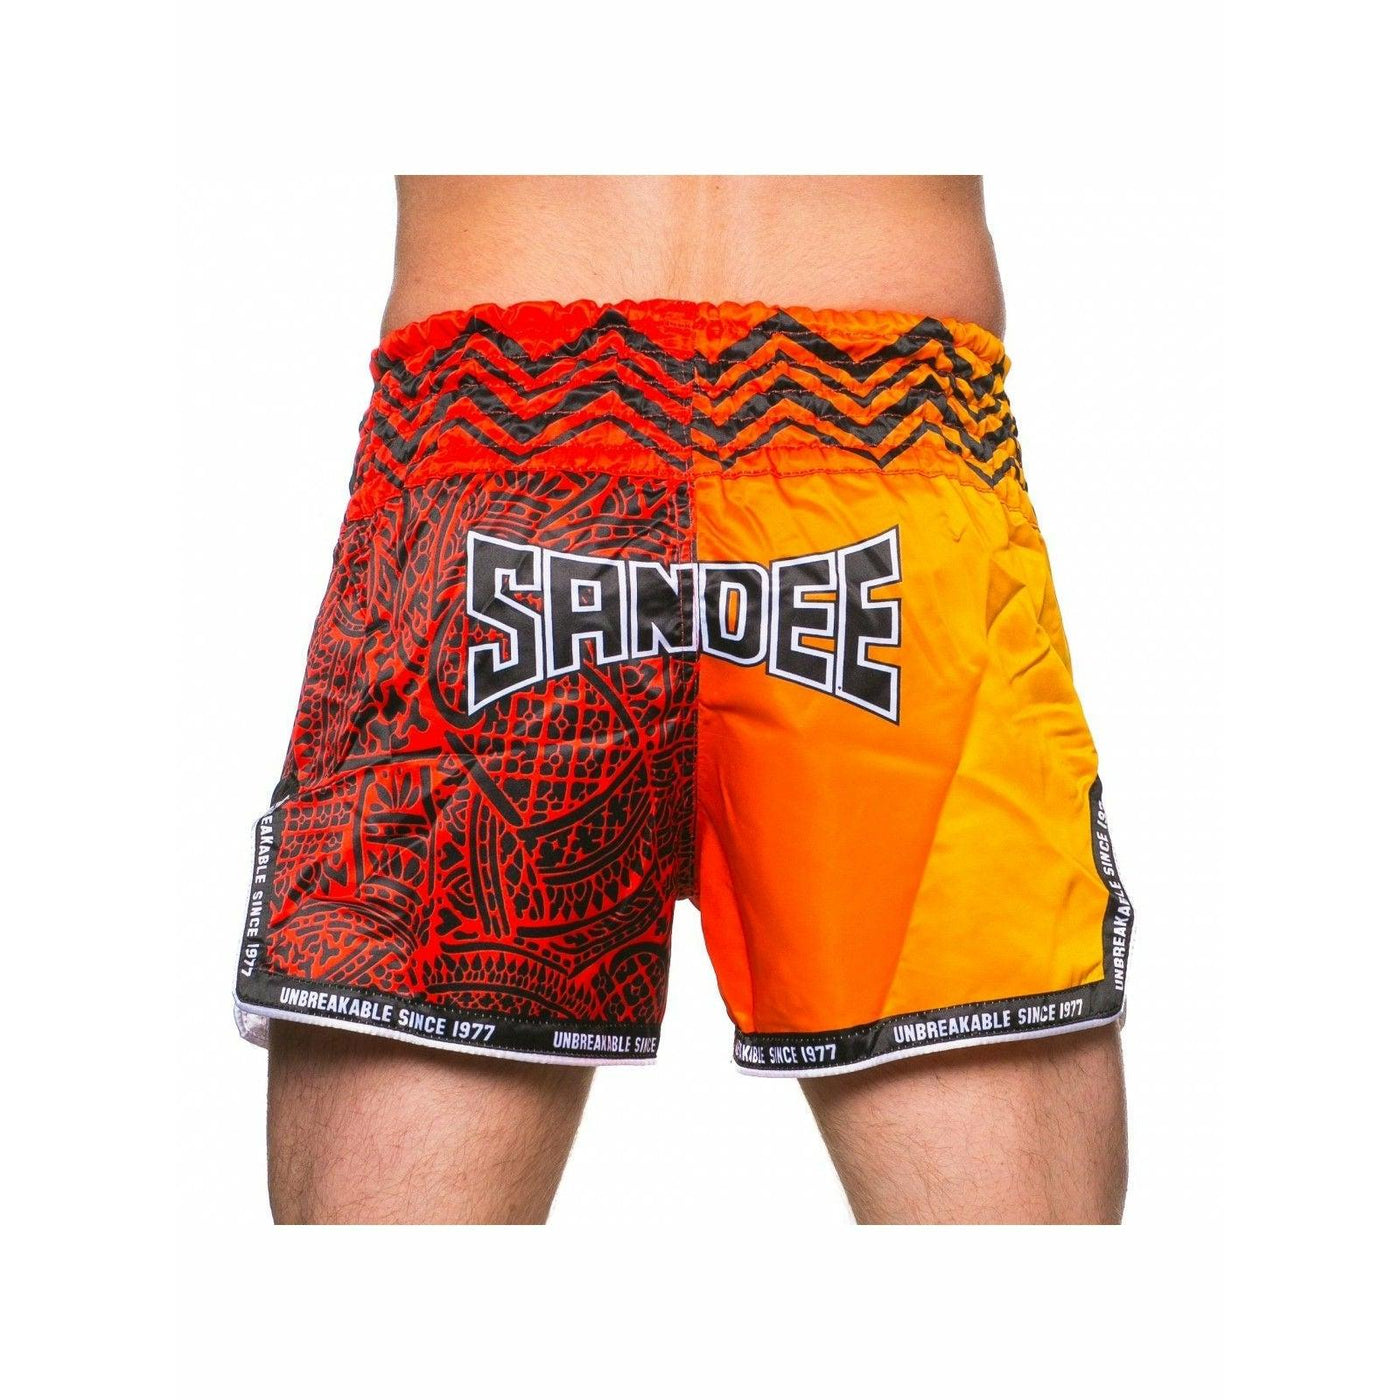 Sandee Muay Thai Shorts - Warrior Red & Orange - Muay Thailand